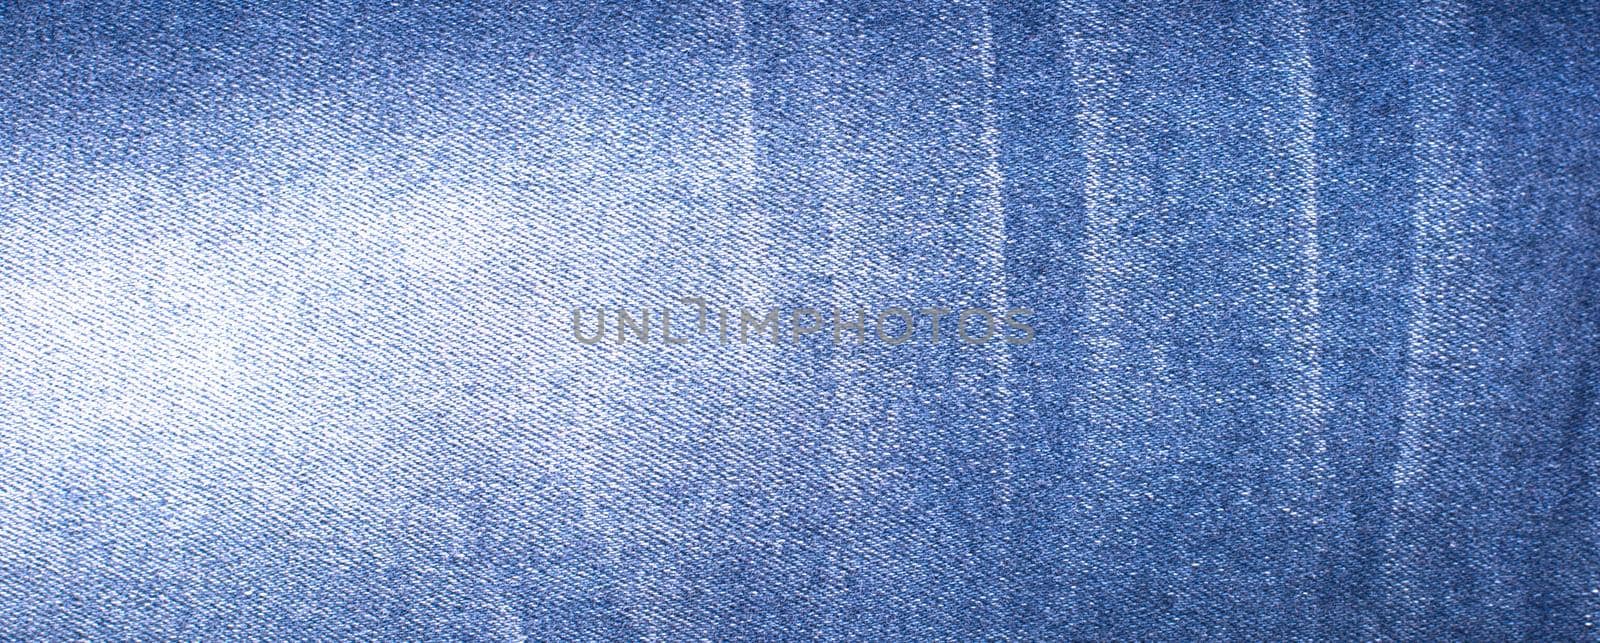 Background of denim blue texture jeans by vikiriki